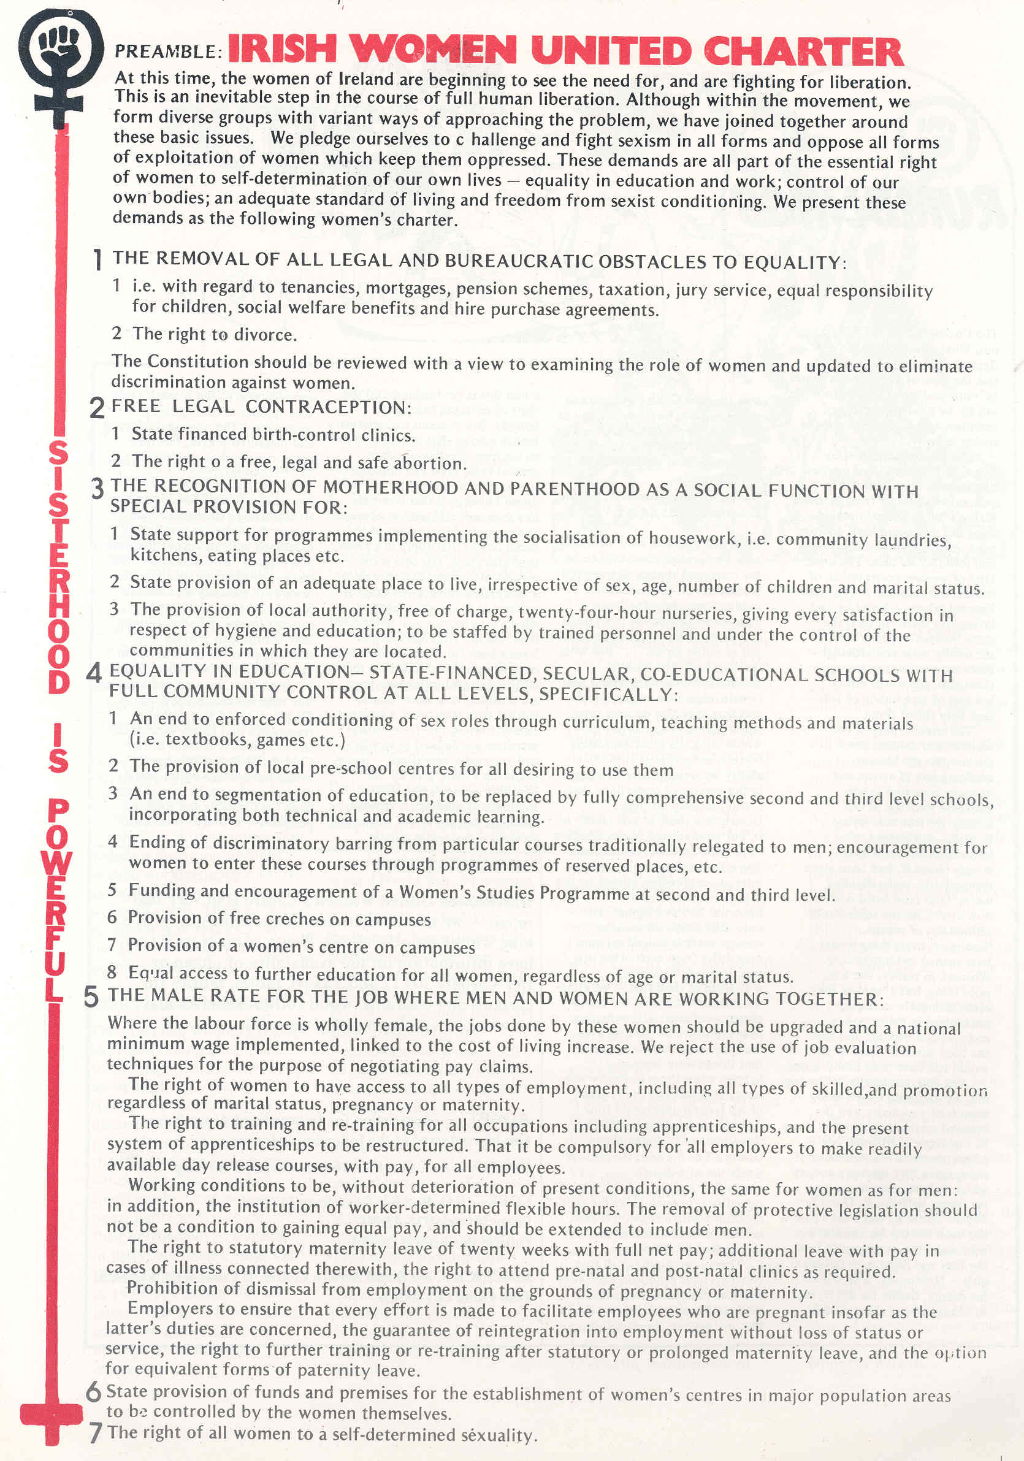 Charter of Irish Women United [1976]